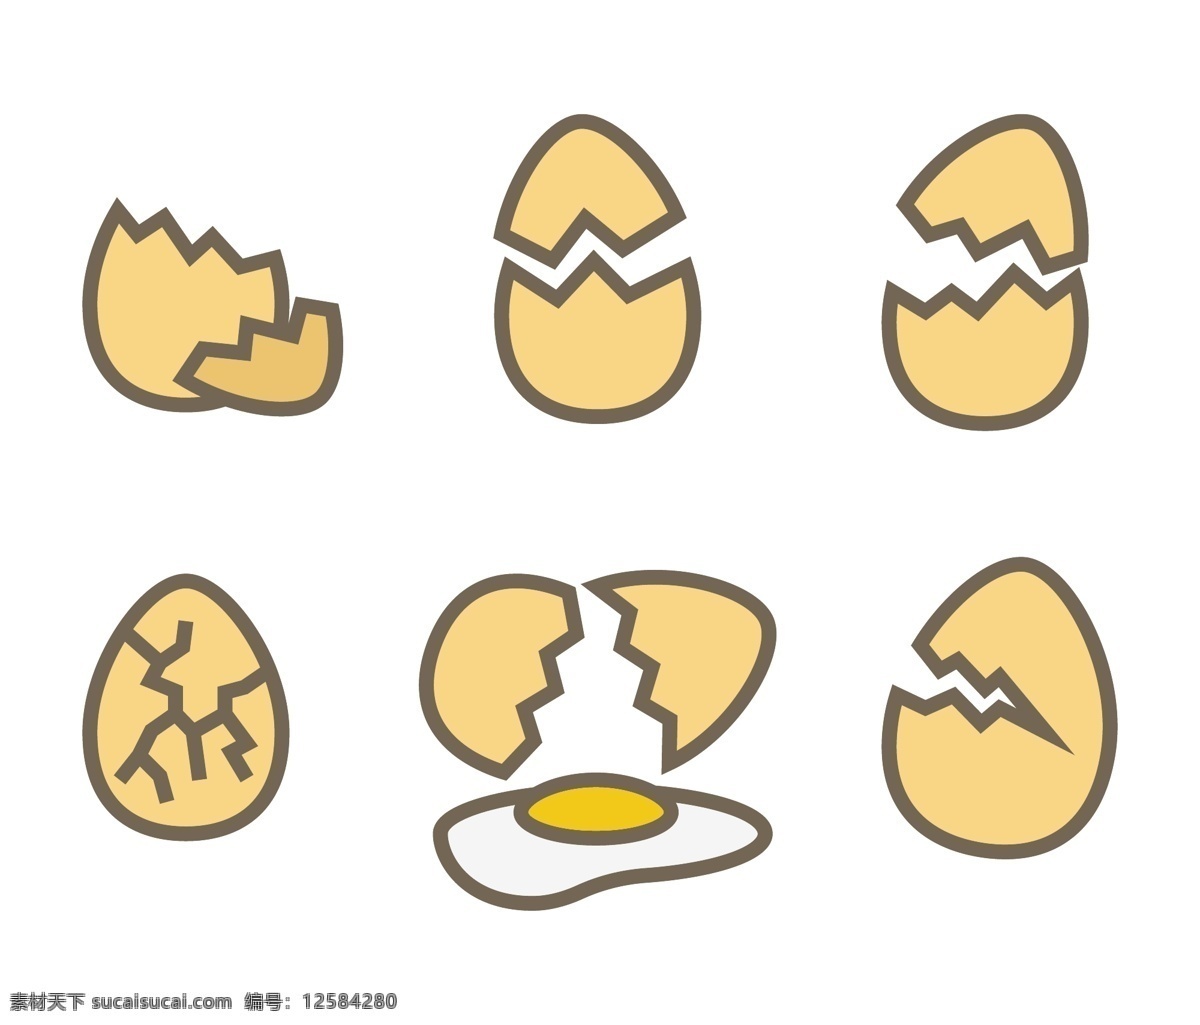 卡通鸡蛋 鸡蛋 鸡蛋壳 碎鸡蛋 鸡蛋素材 矢量 食品蔬菜水果 卡通设计